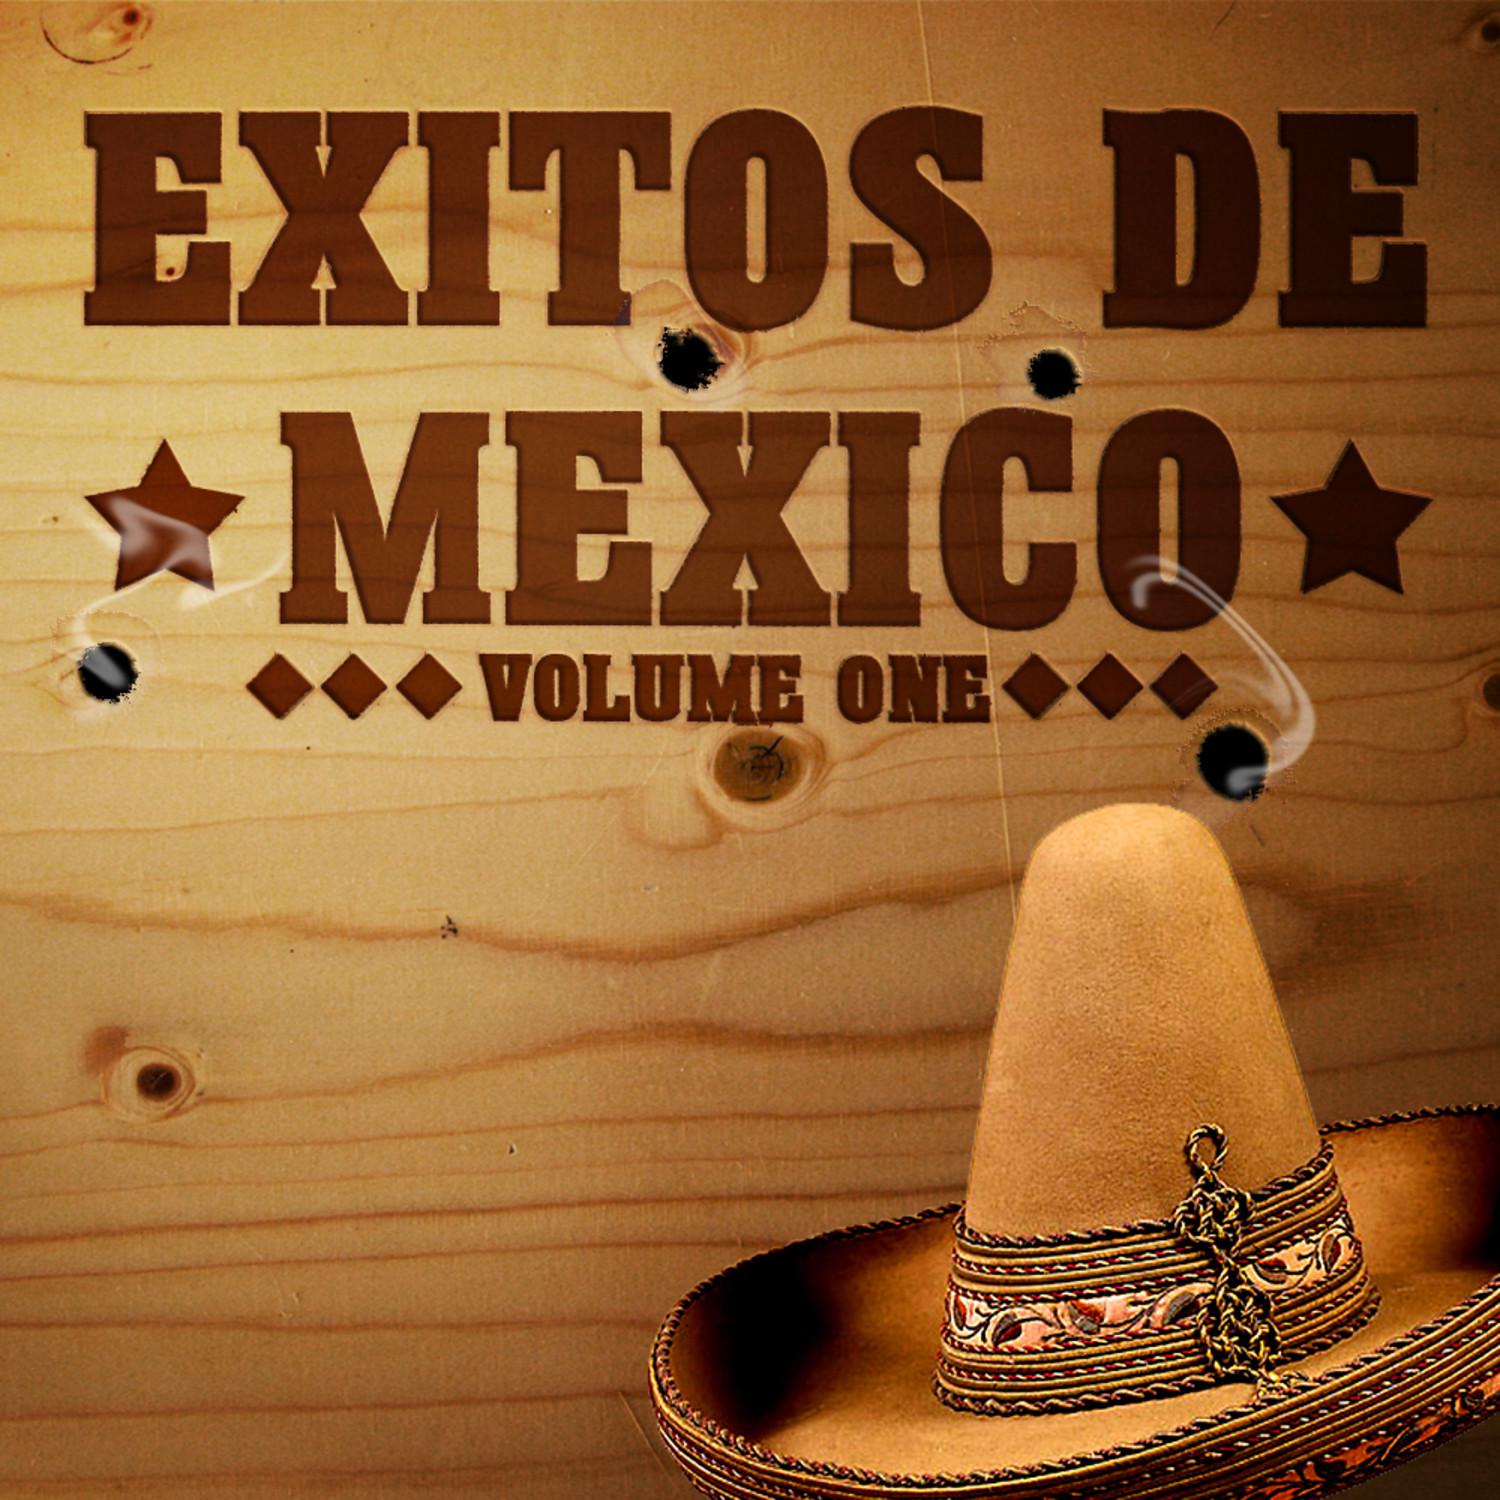 Exitos De Mexico Vol 1